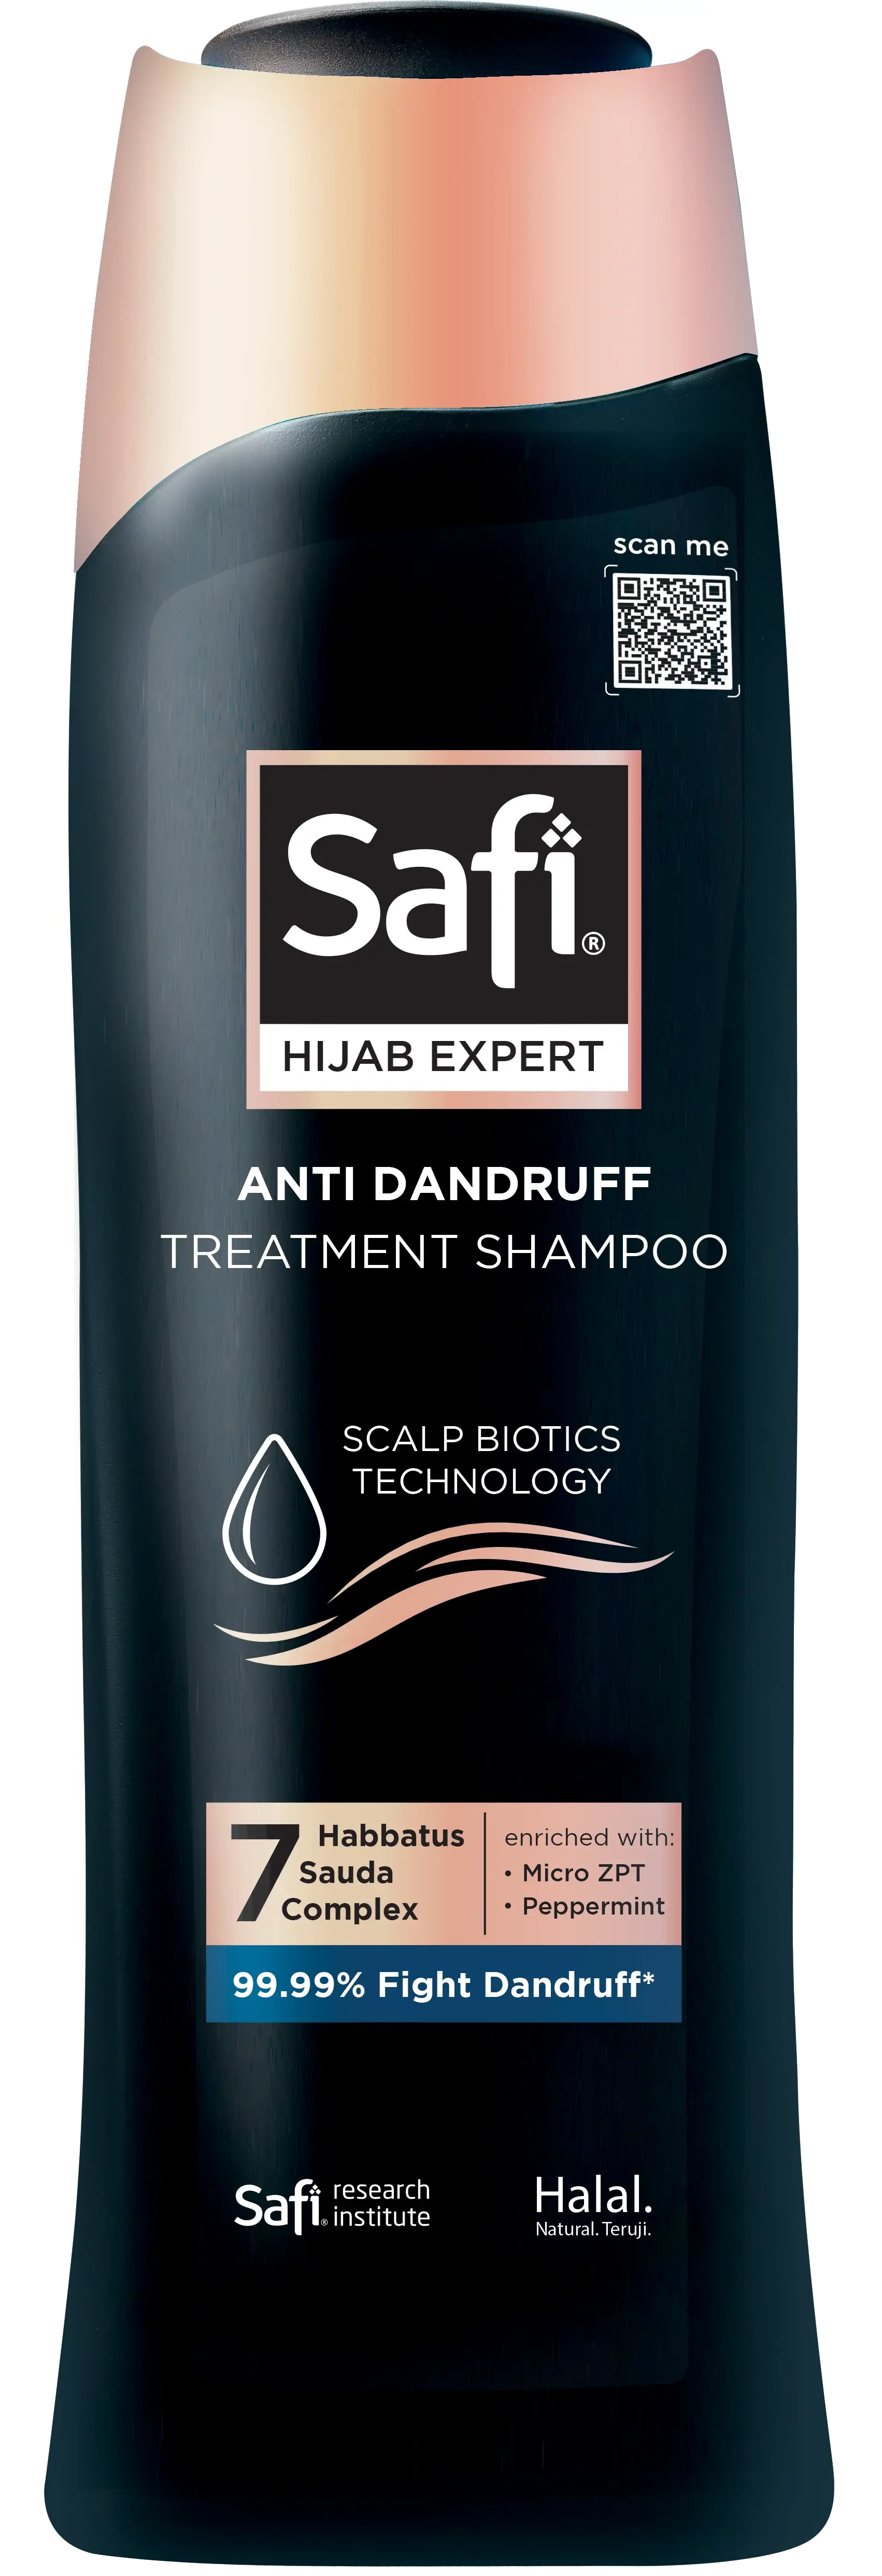 Safi Hair Xpert Anti Dandruff dengan Habbatus Sauda+ Micro Bamboo Charcoal akan membuat kulit kepala terasa bersih dan ringan - Safi Hijab Expert Anti Dandruff Shampoo